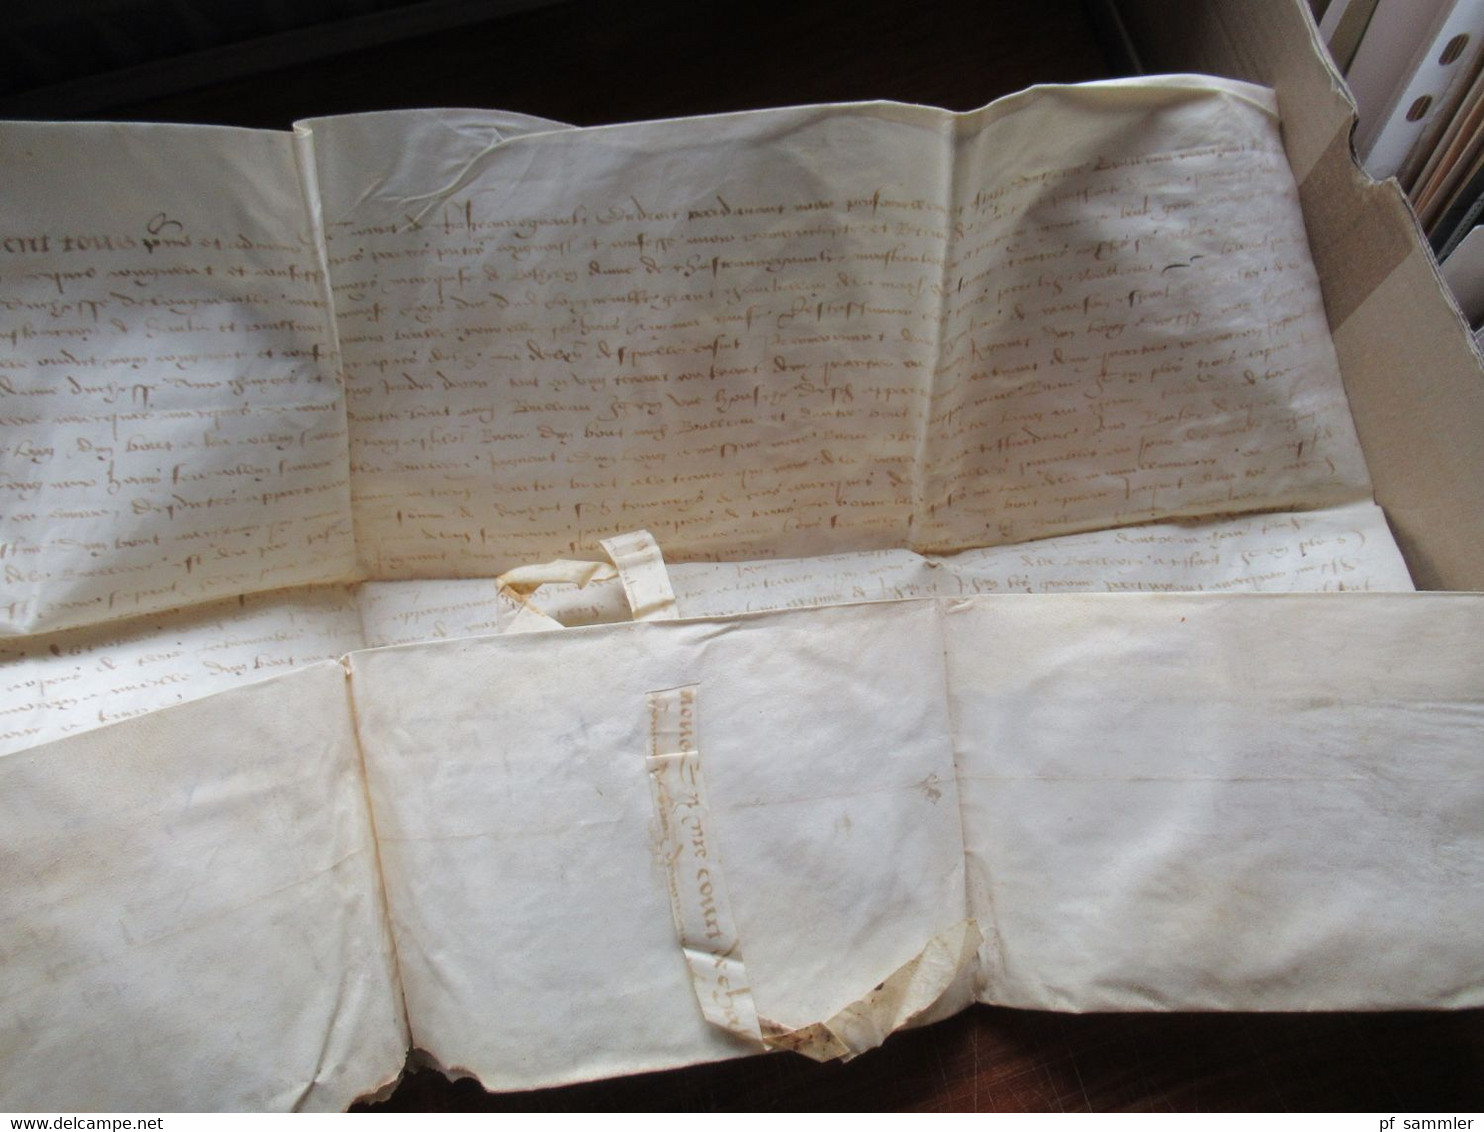 Frankreich uralter Brief / Dokument auf Leder ?? 15. oder 16. Jahrhundert Schnörkelunterschrift Interessant??